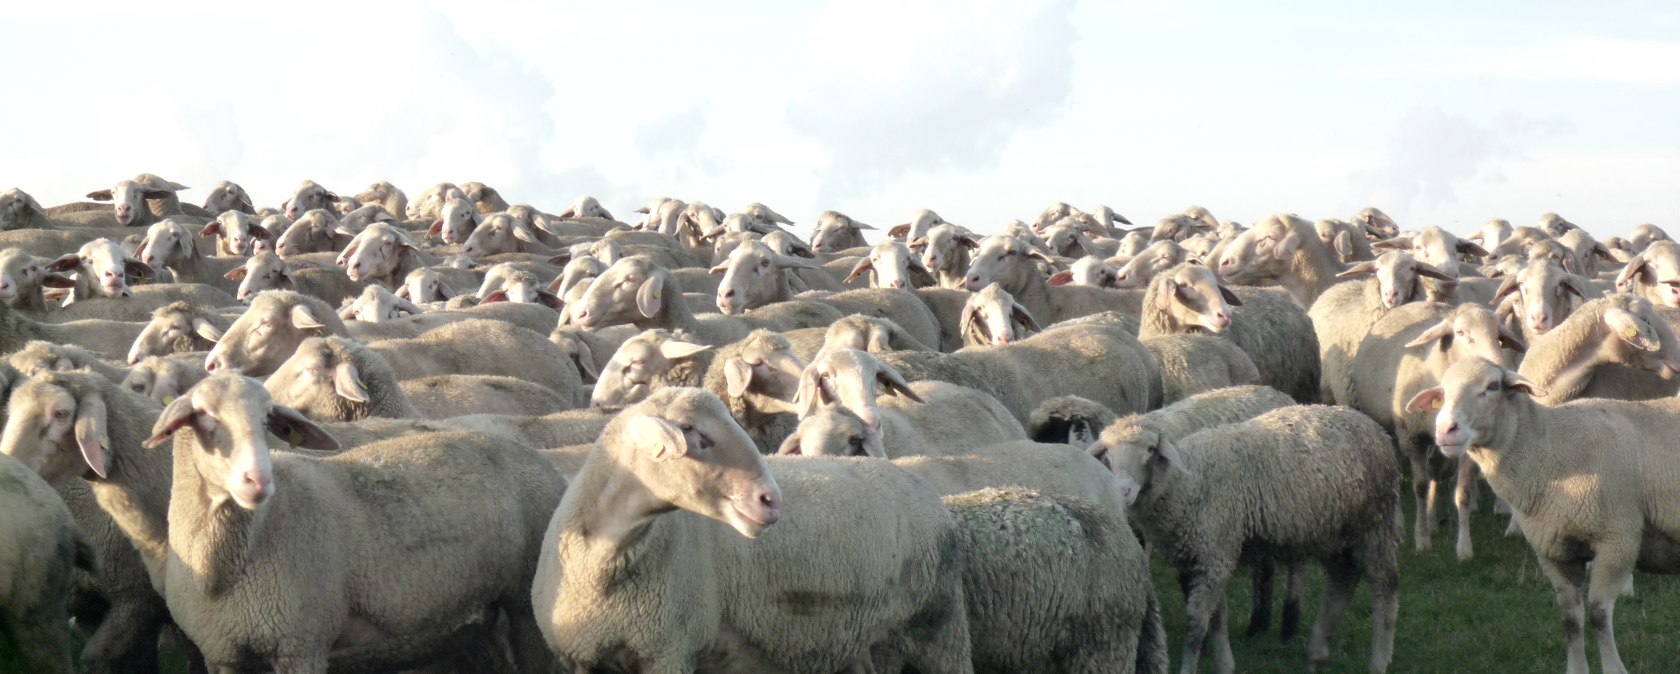 Schafe auf der Dreiborner Hochfläche, © Rursee-Touristik / C. Freuen